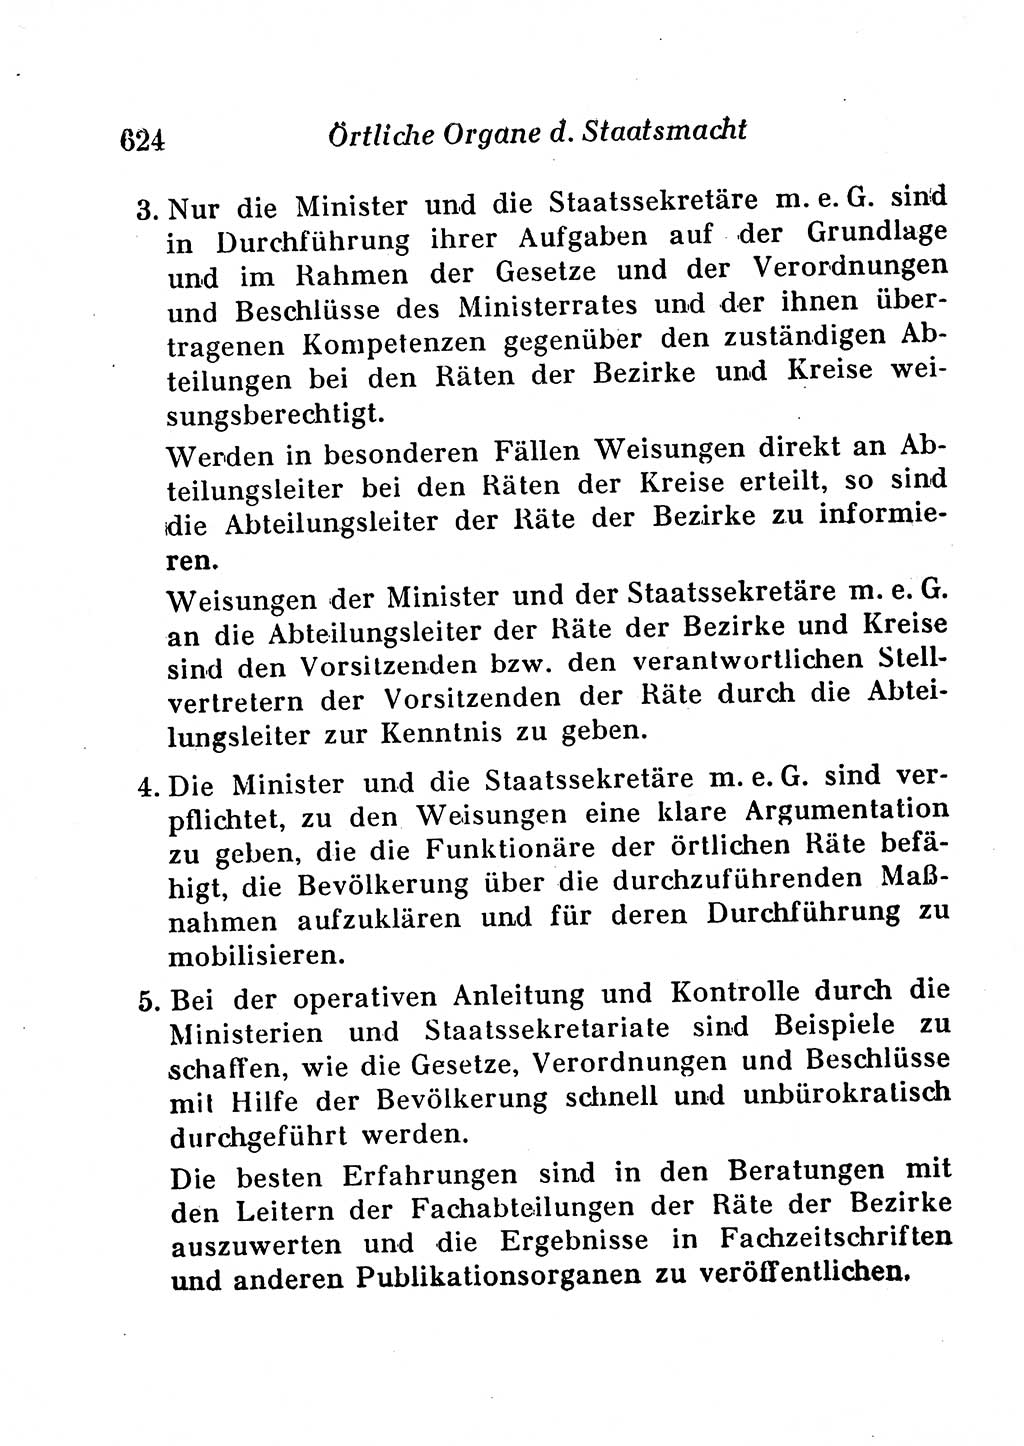 Staats- und verwaltungsrechtliche Gesetze der Deutschen Demokratischen Republik (DDR) 1958, Seite 624 (StVerwR Ges. DDR 1958, S. 624)